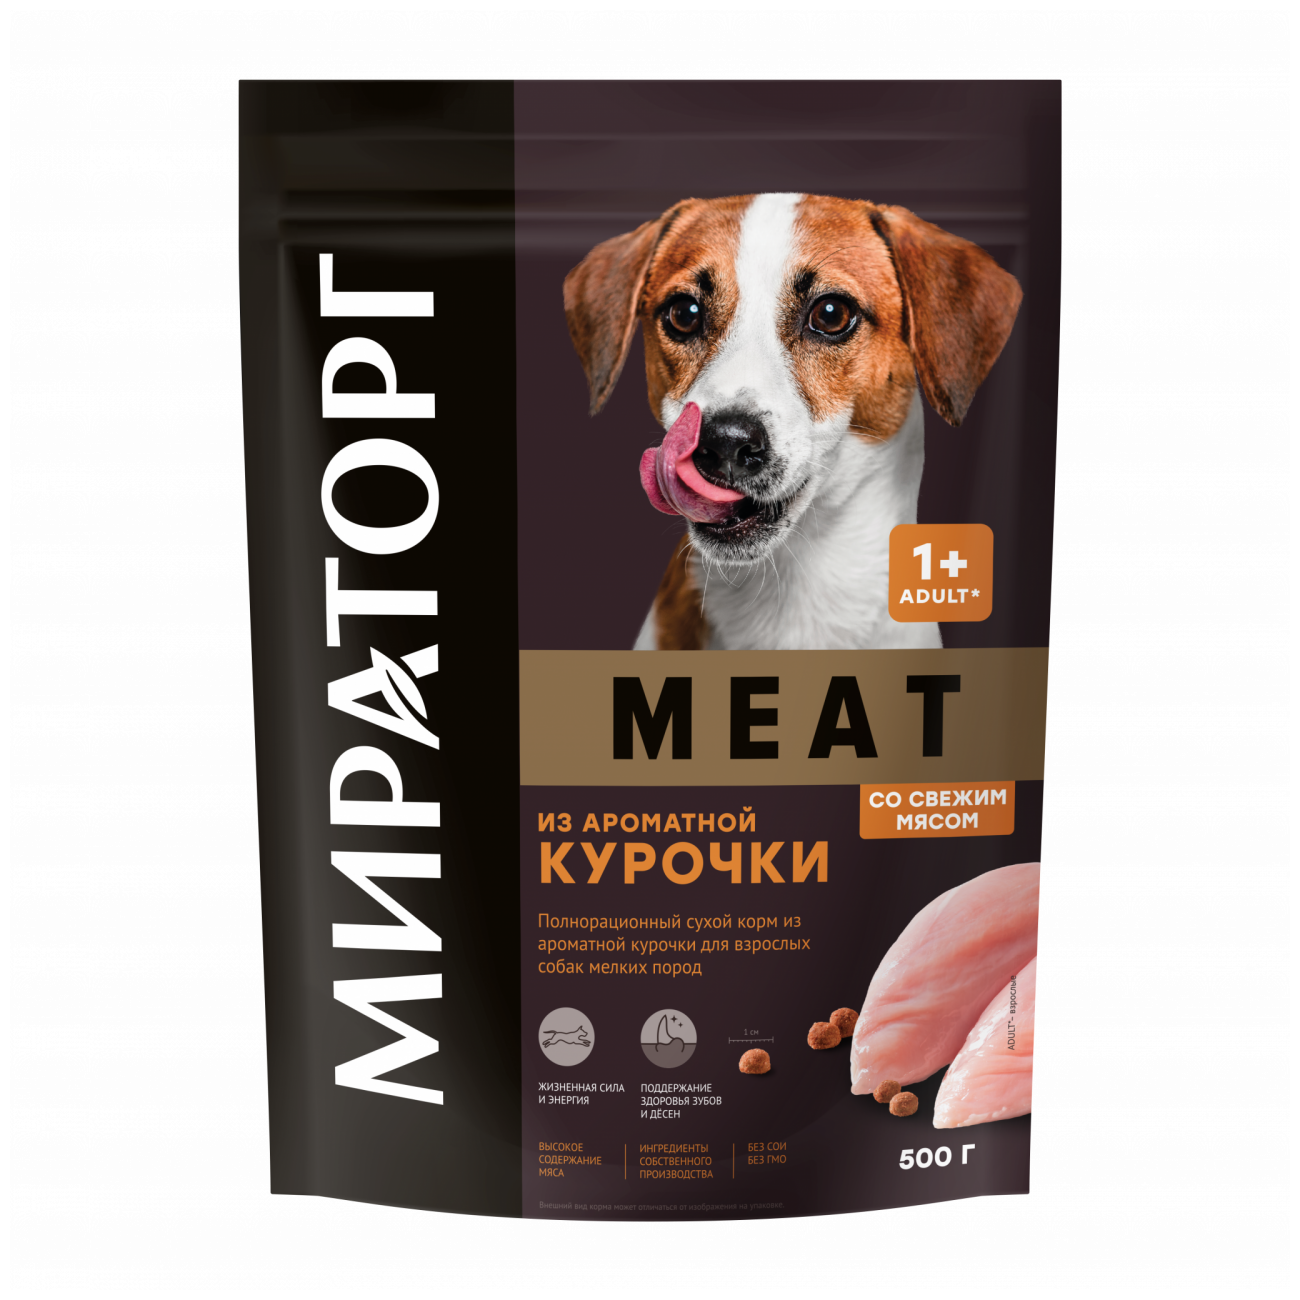 Мираторг Meat Сухой корм из ароматной курочки для собак мелких пород пакет, 500 гр